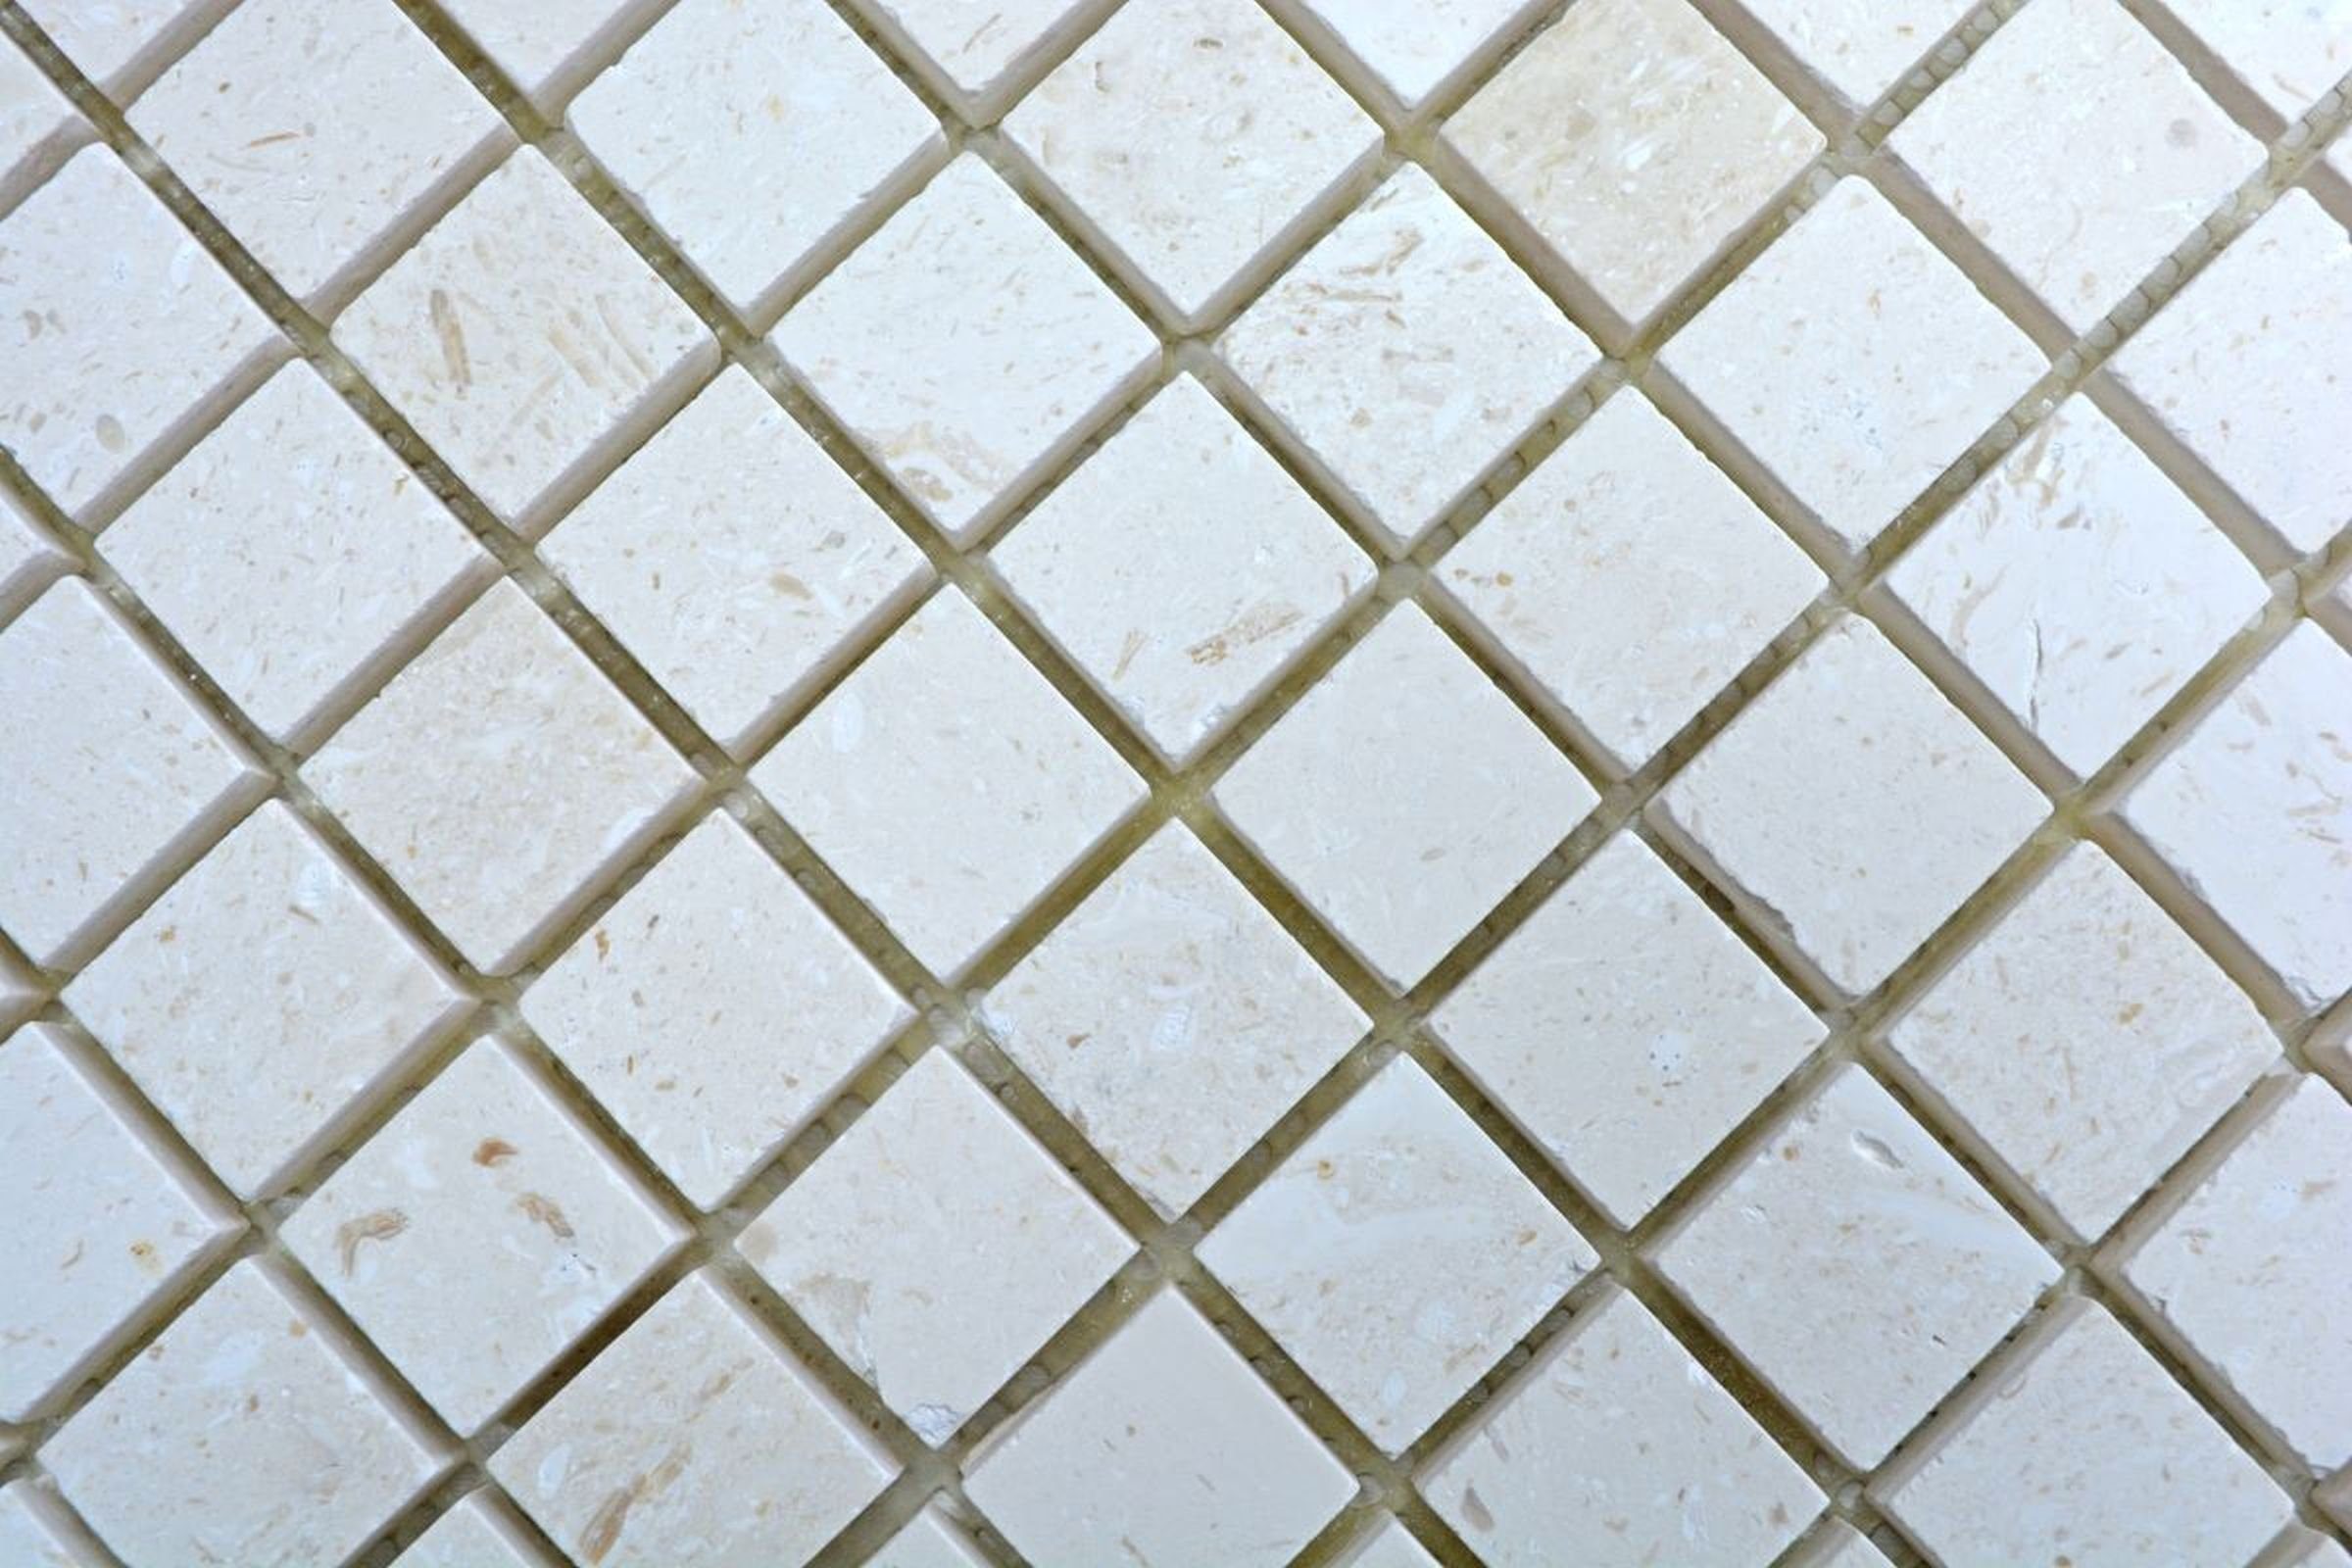 Mosani Mosaikfliesen Profil KalkNatursteinmosaik Mosaikfliesen Matten matt weiß 10 